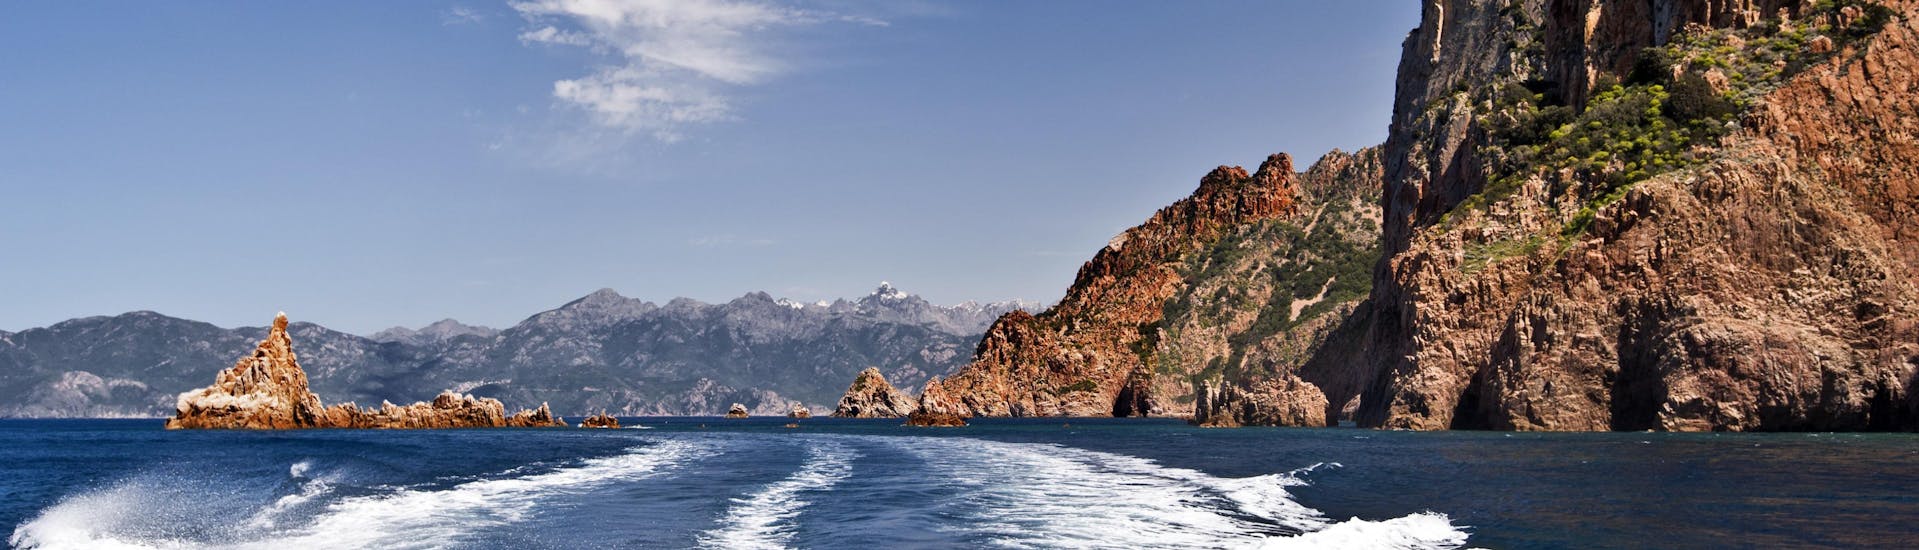 Blick vom Heck eines Bootes während einer Bootstour in den beeindruckenden Calanques de Piana an der Westküste Korsikas.